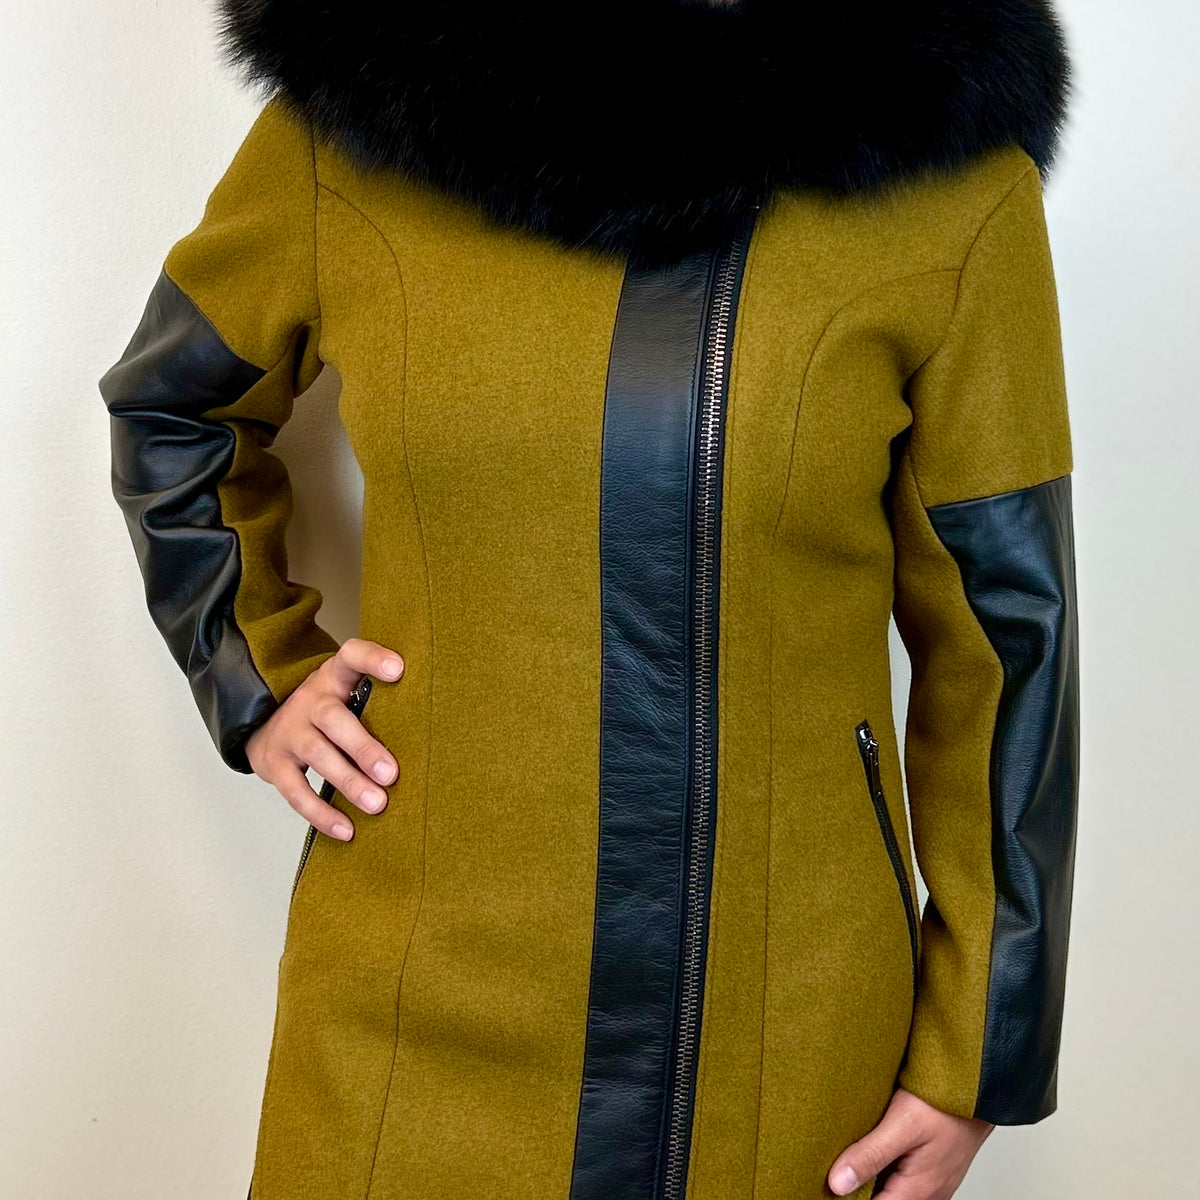 The Nanuraq Collection - Winter 2022 — Victoria's Arctic Fashion